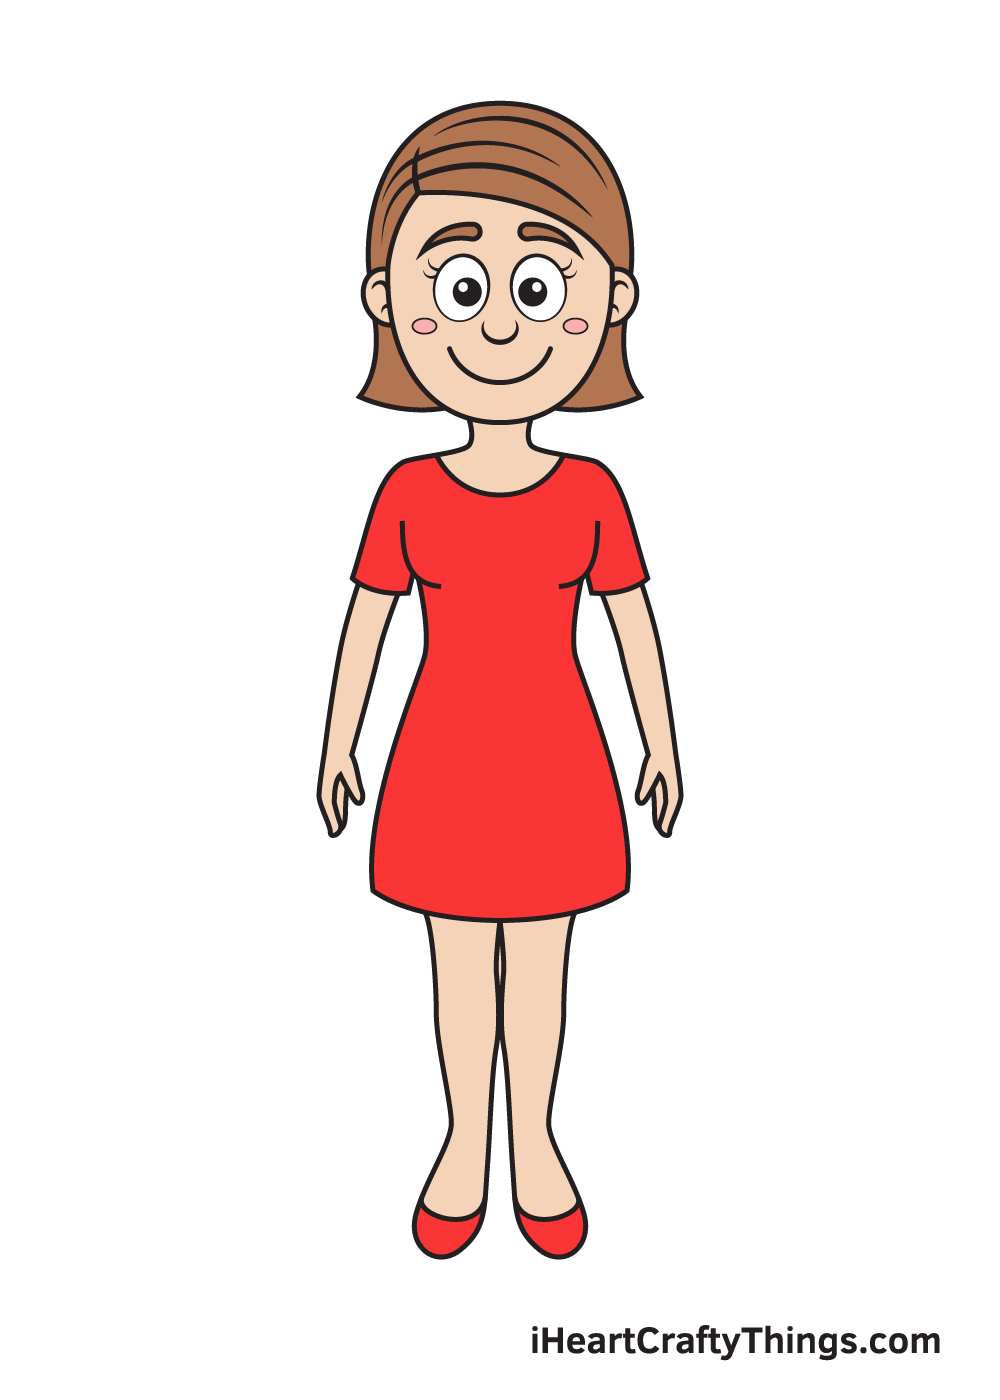 Woman DRAWING – STEP 10 - Hướng dẫn chi tiết cách vẽ cô gái đơn giản với 9 bước cơ bản